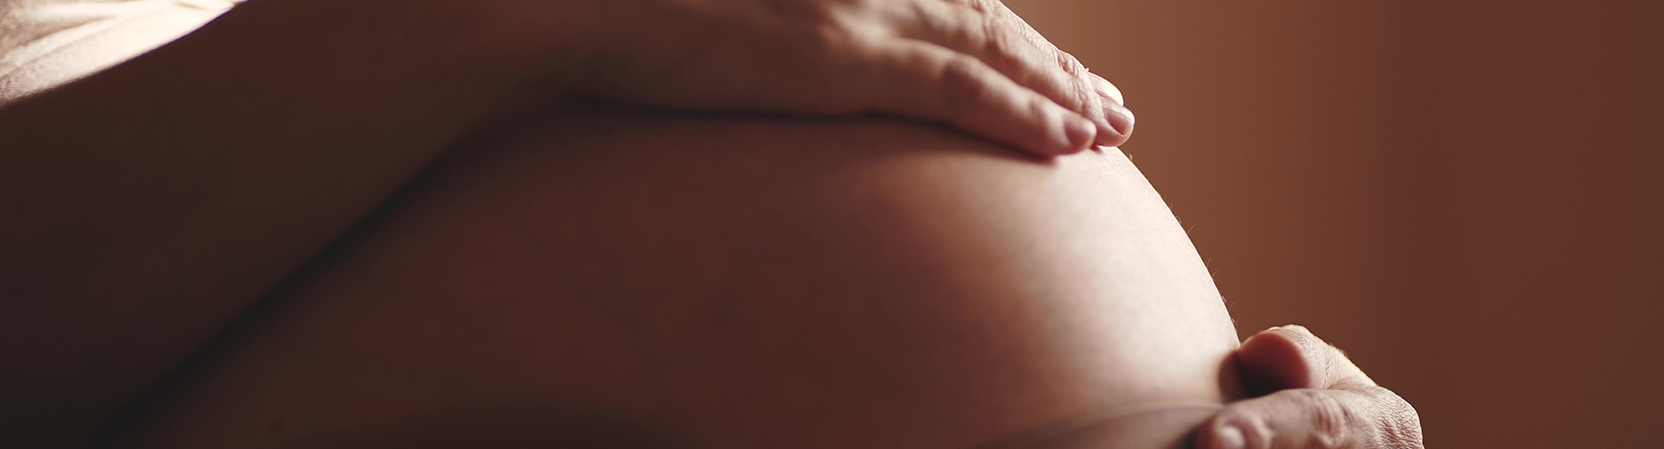 Formation maternité : Prise en charge de la grossesse et du post-partum